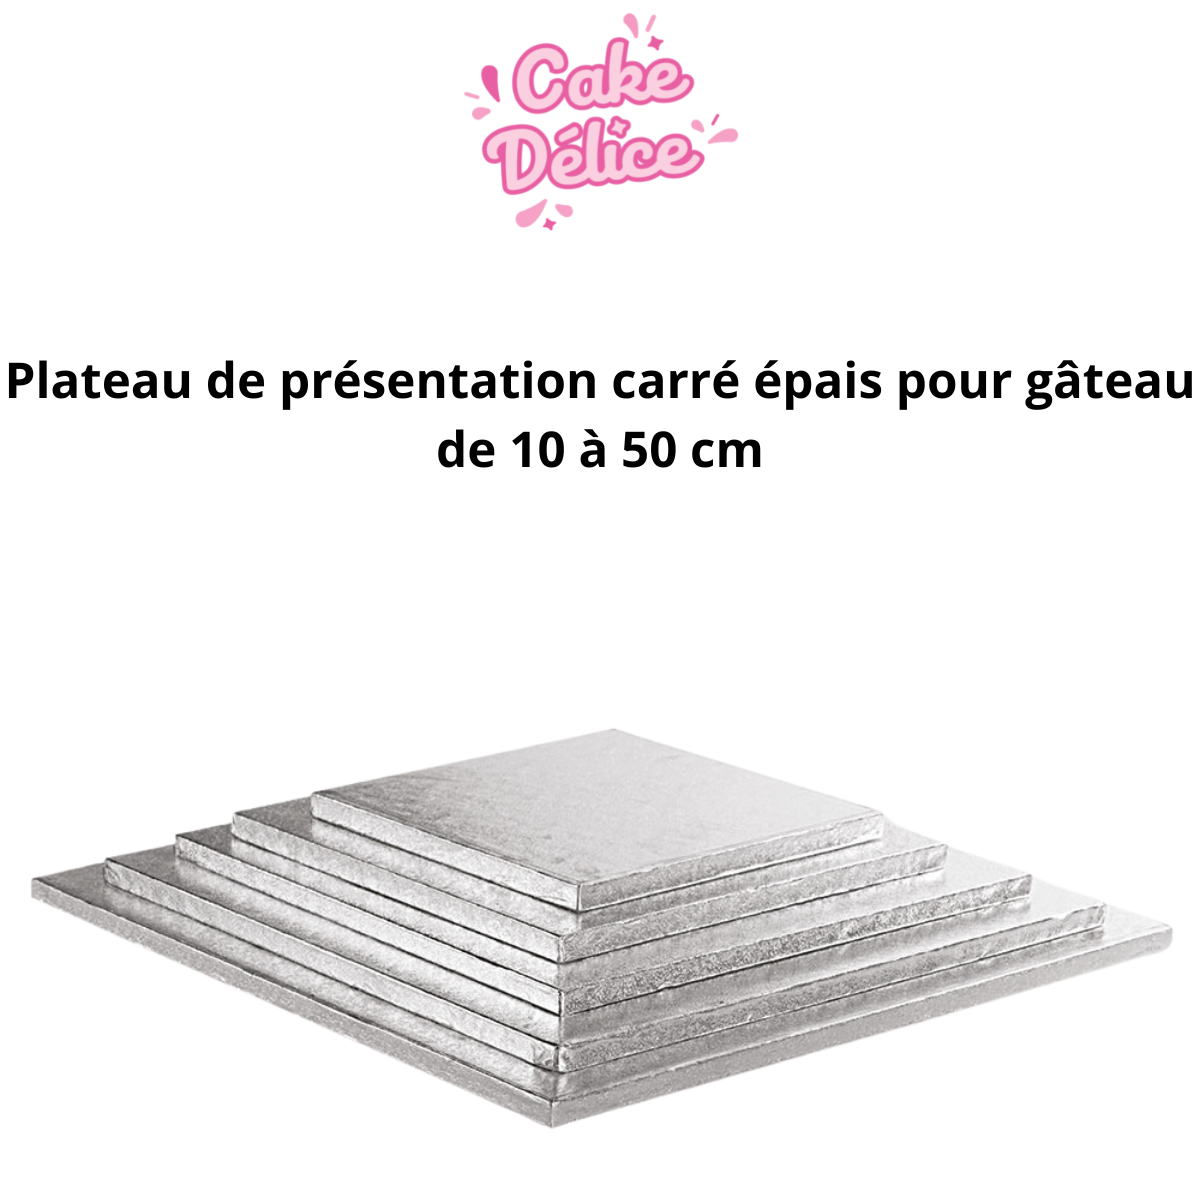 Plateau de présentation carré épais pour gâteau de 10 à 50 cm à 1,79 €